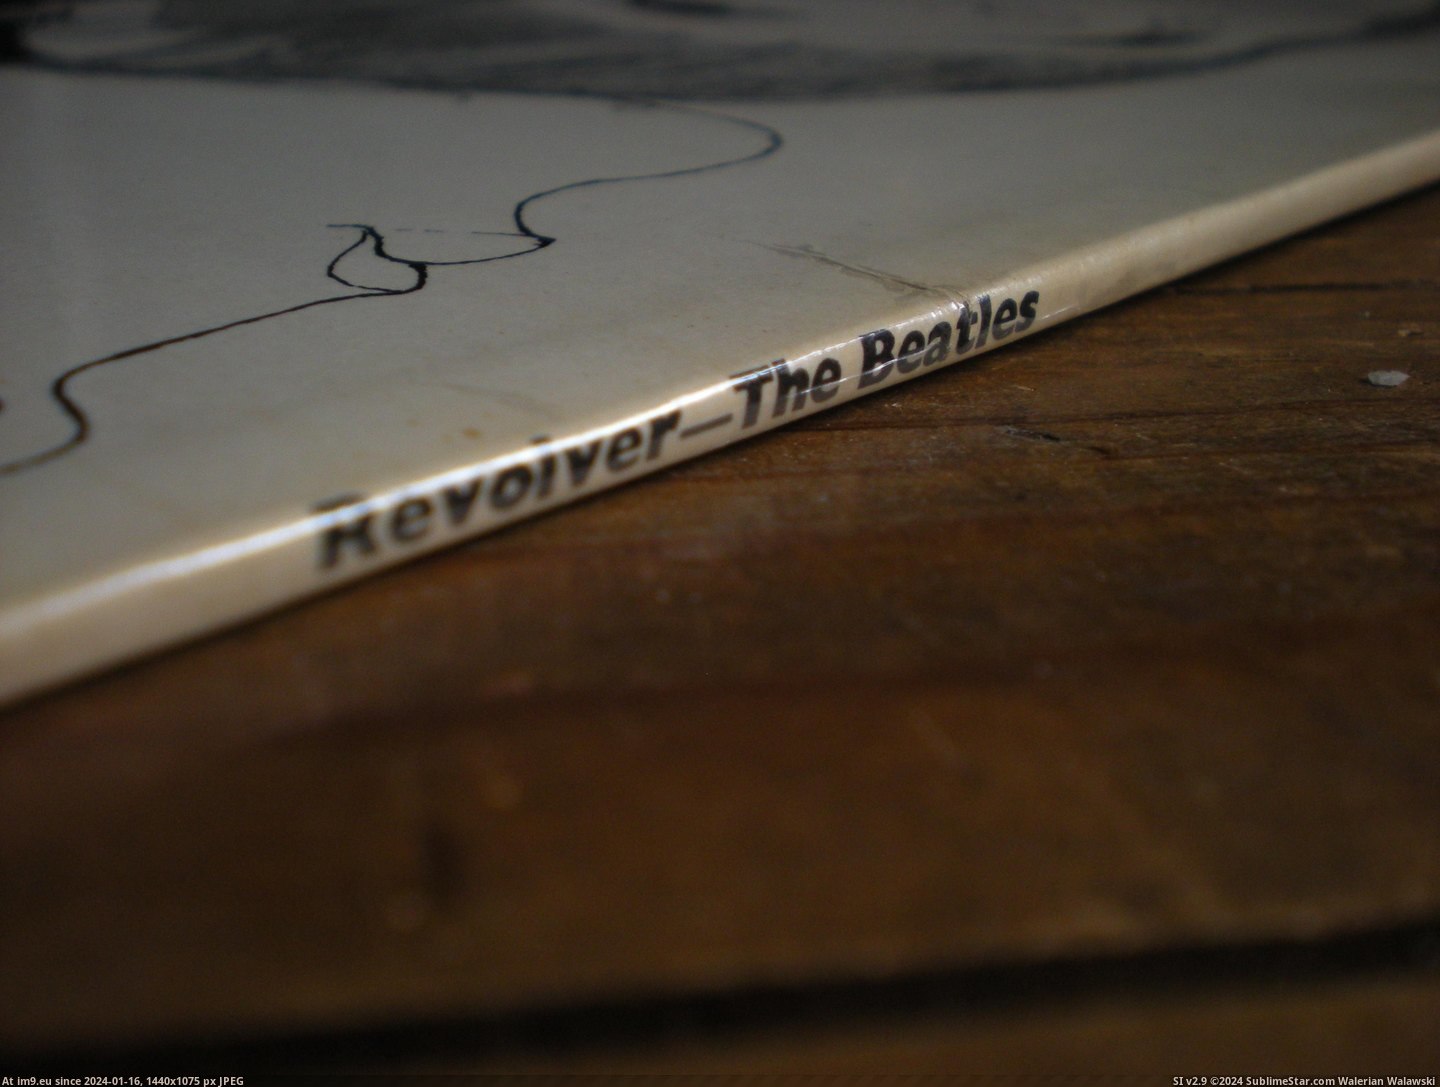  #Revolver  Revolver 15-07-14 4 Pic. (Bild von album new 1))